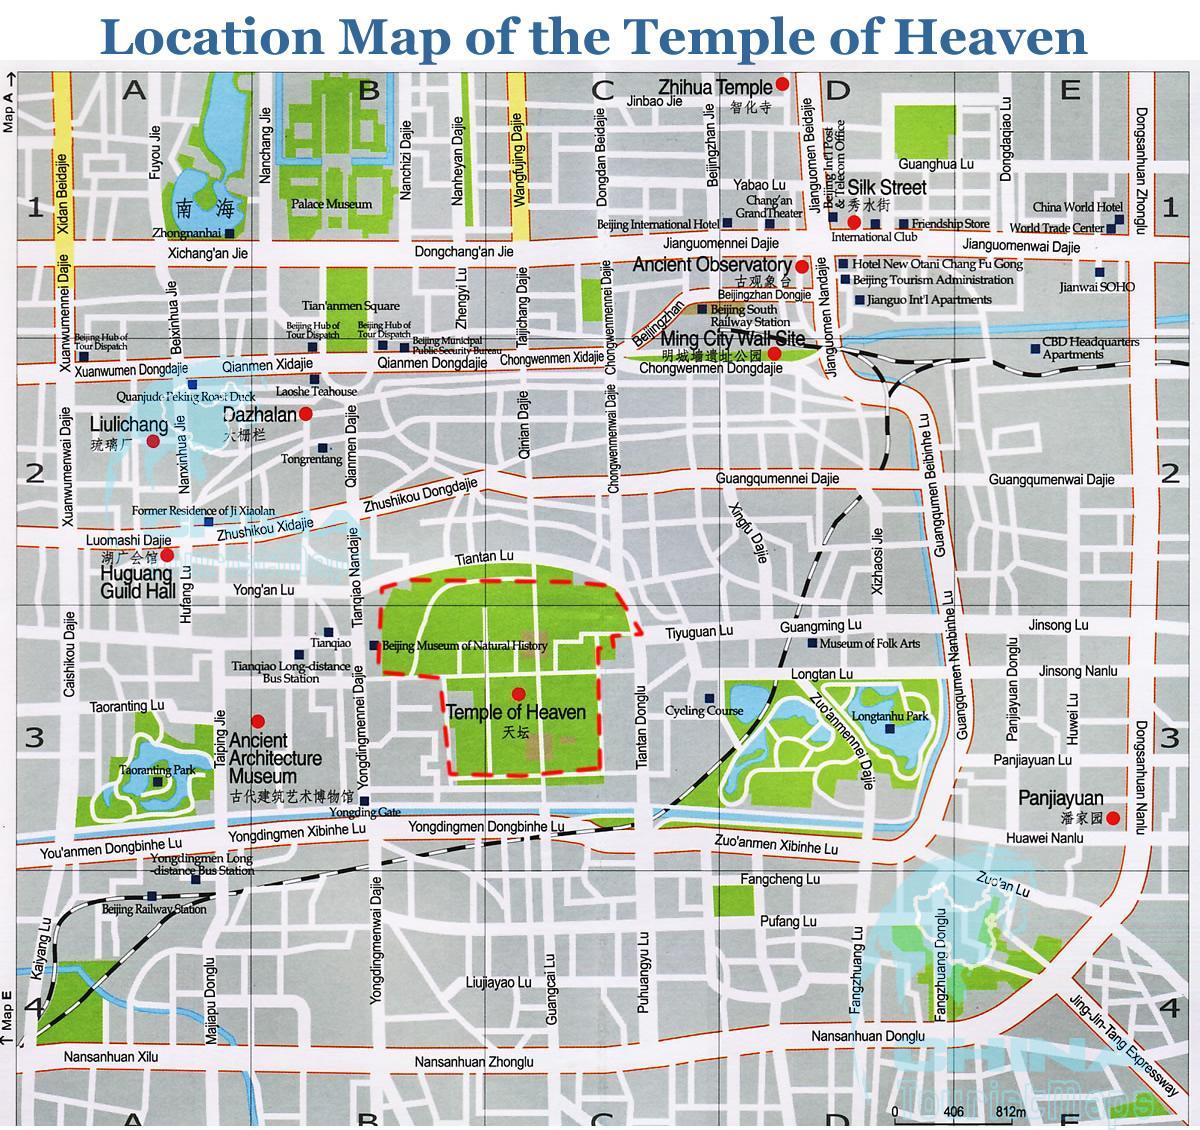 kort over temple of heaven 